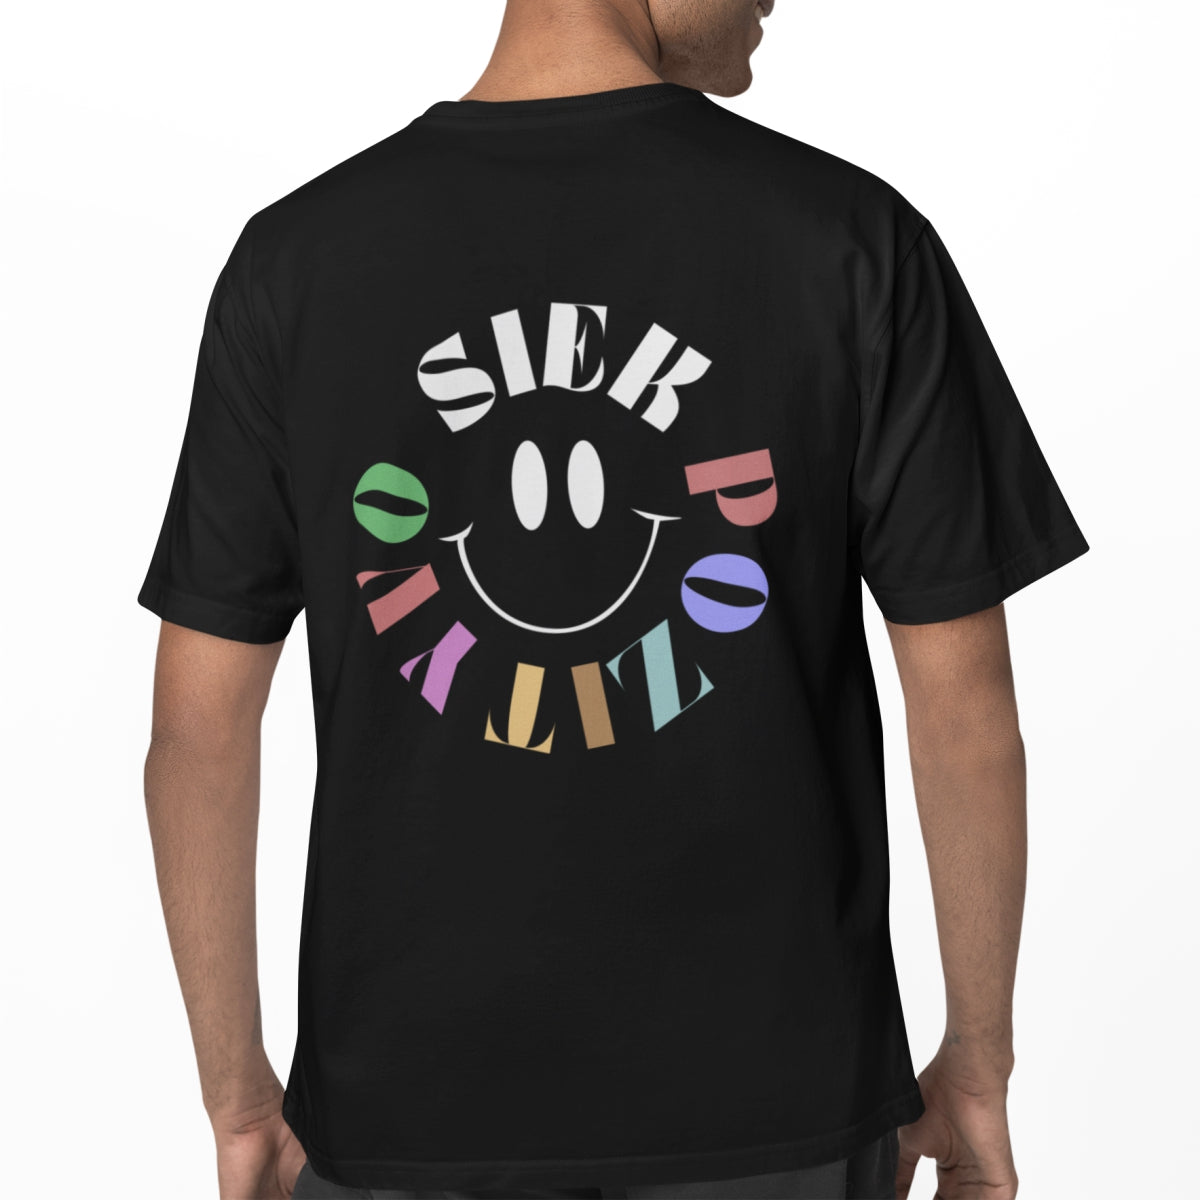 Juodi UNISEX marškinėliai su spauda ant nugaros "Siek pozityvo"